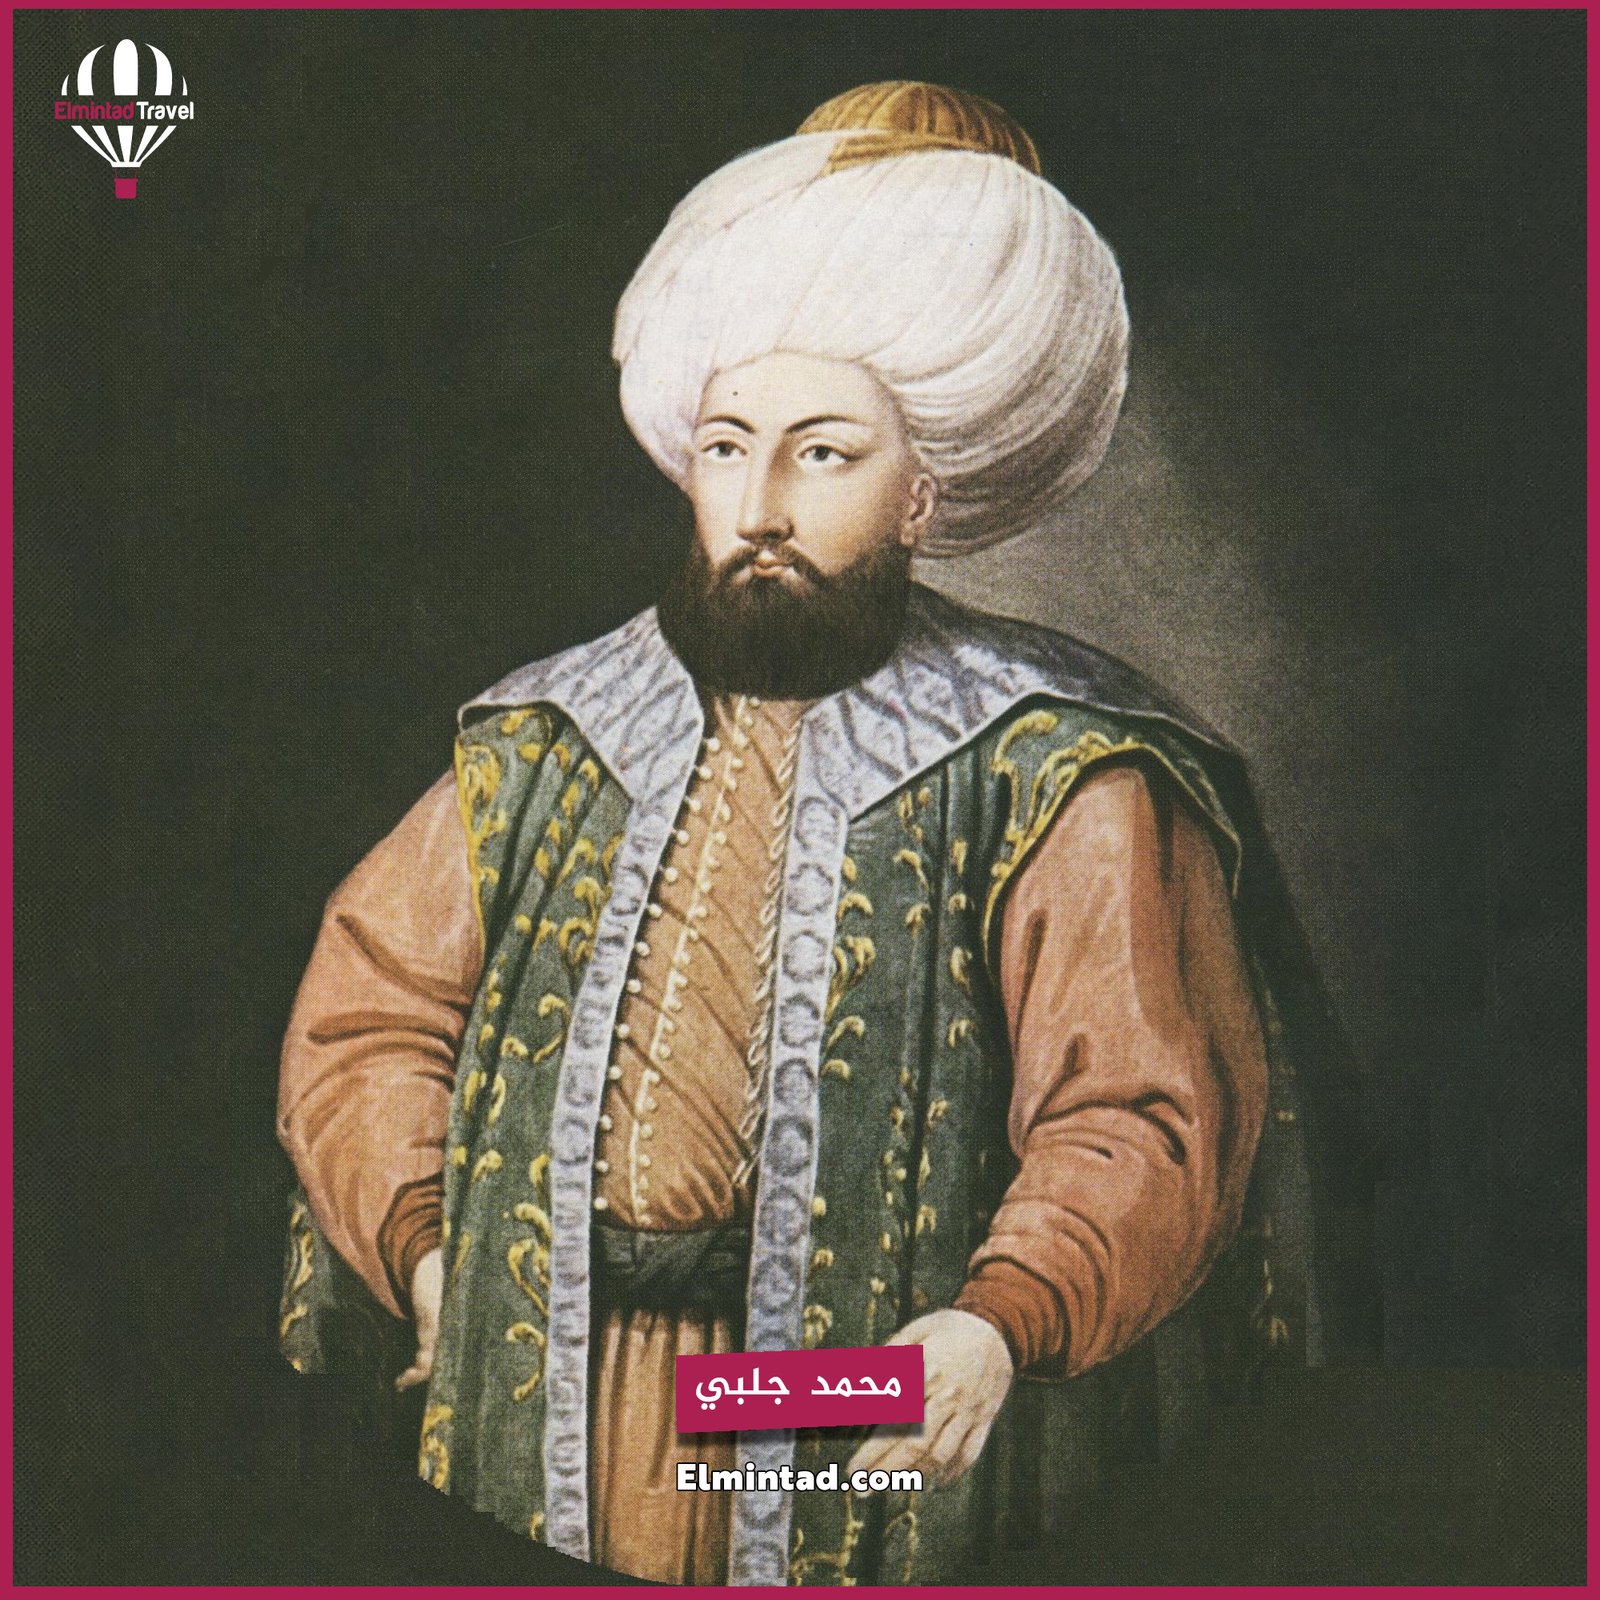 السفر الى تركيا والتعرف على تاريخ السلطان محمد جلبي